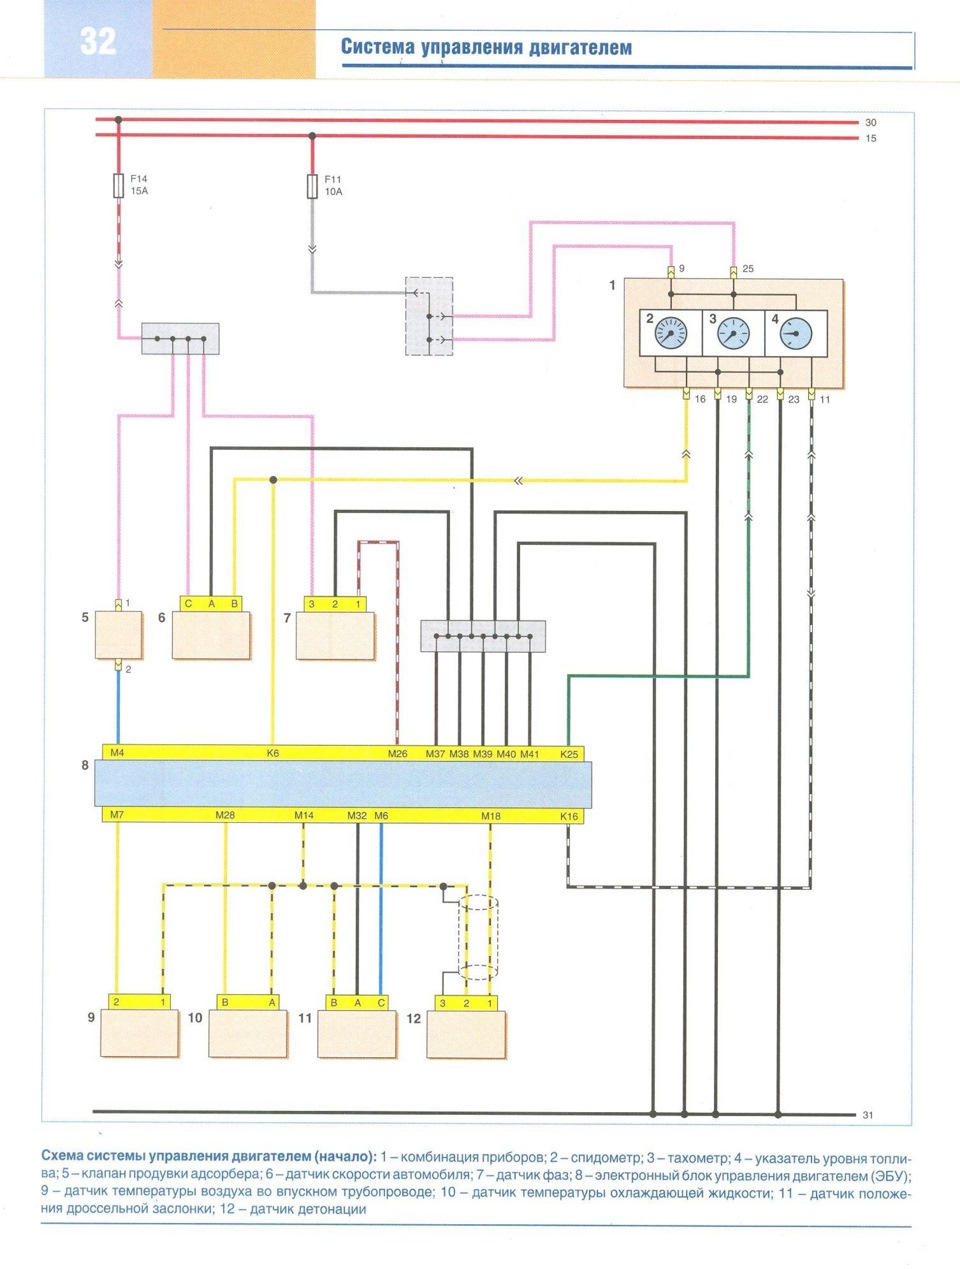 Электрическая схема системы управления двигателем Шевроле Ланос (Chevrolet Lanos)